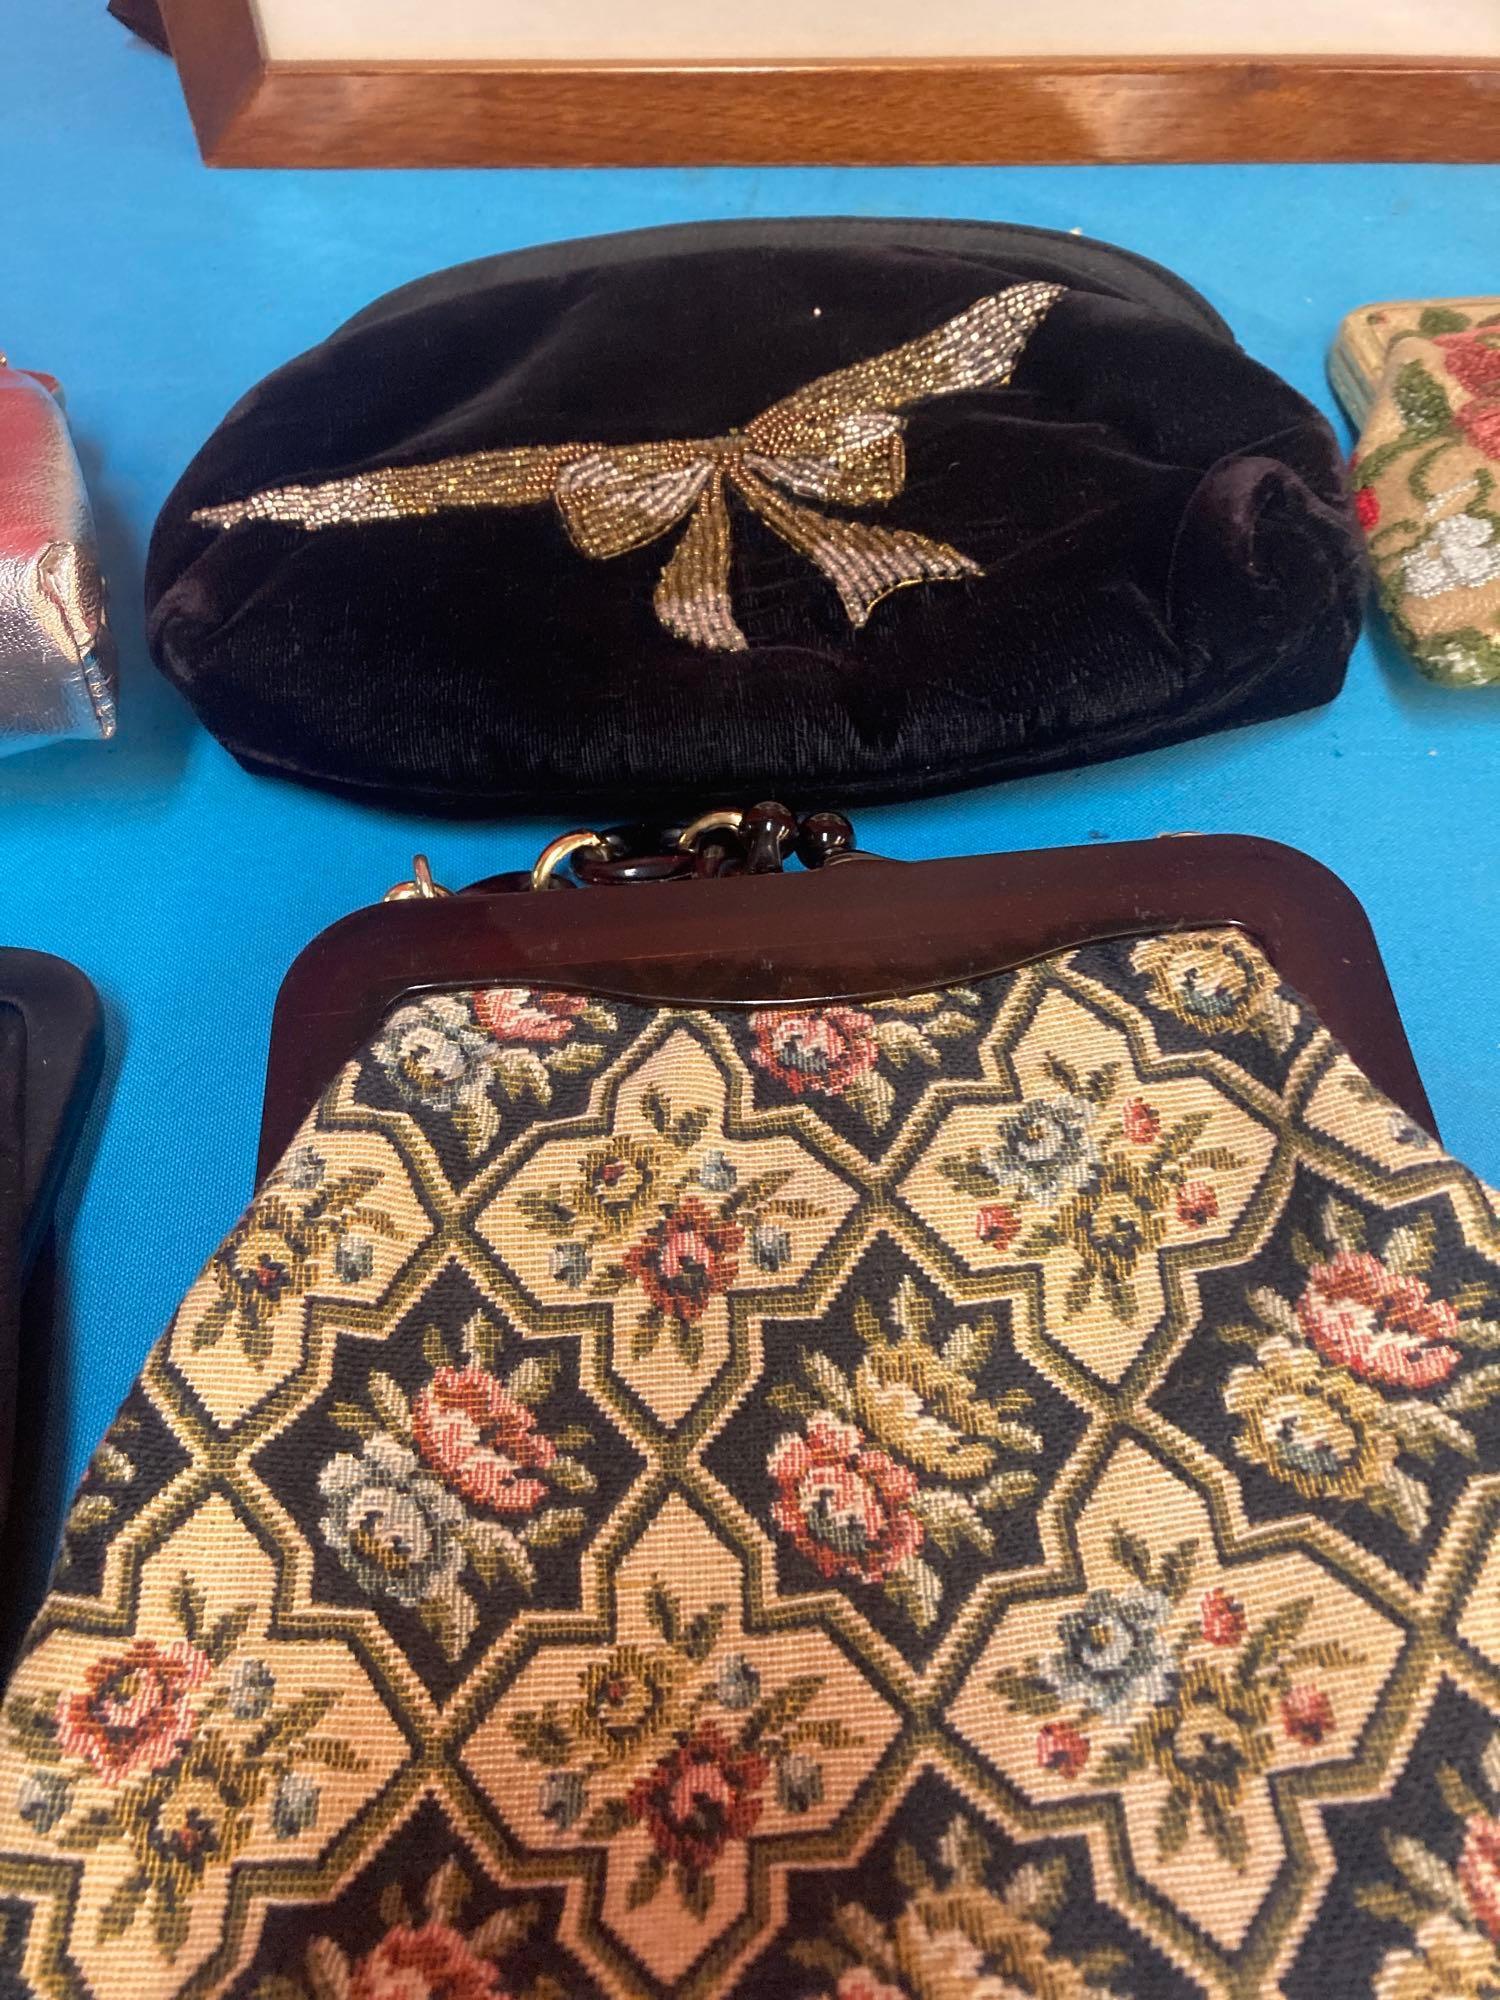 Vintage purses and vintage purse picture replicas